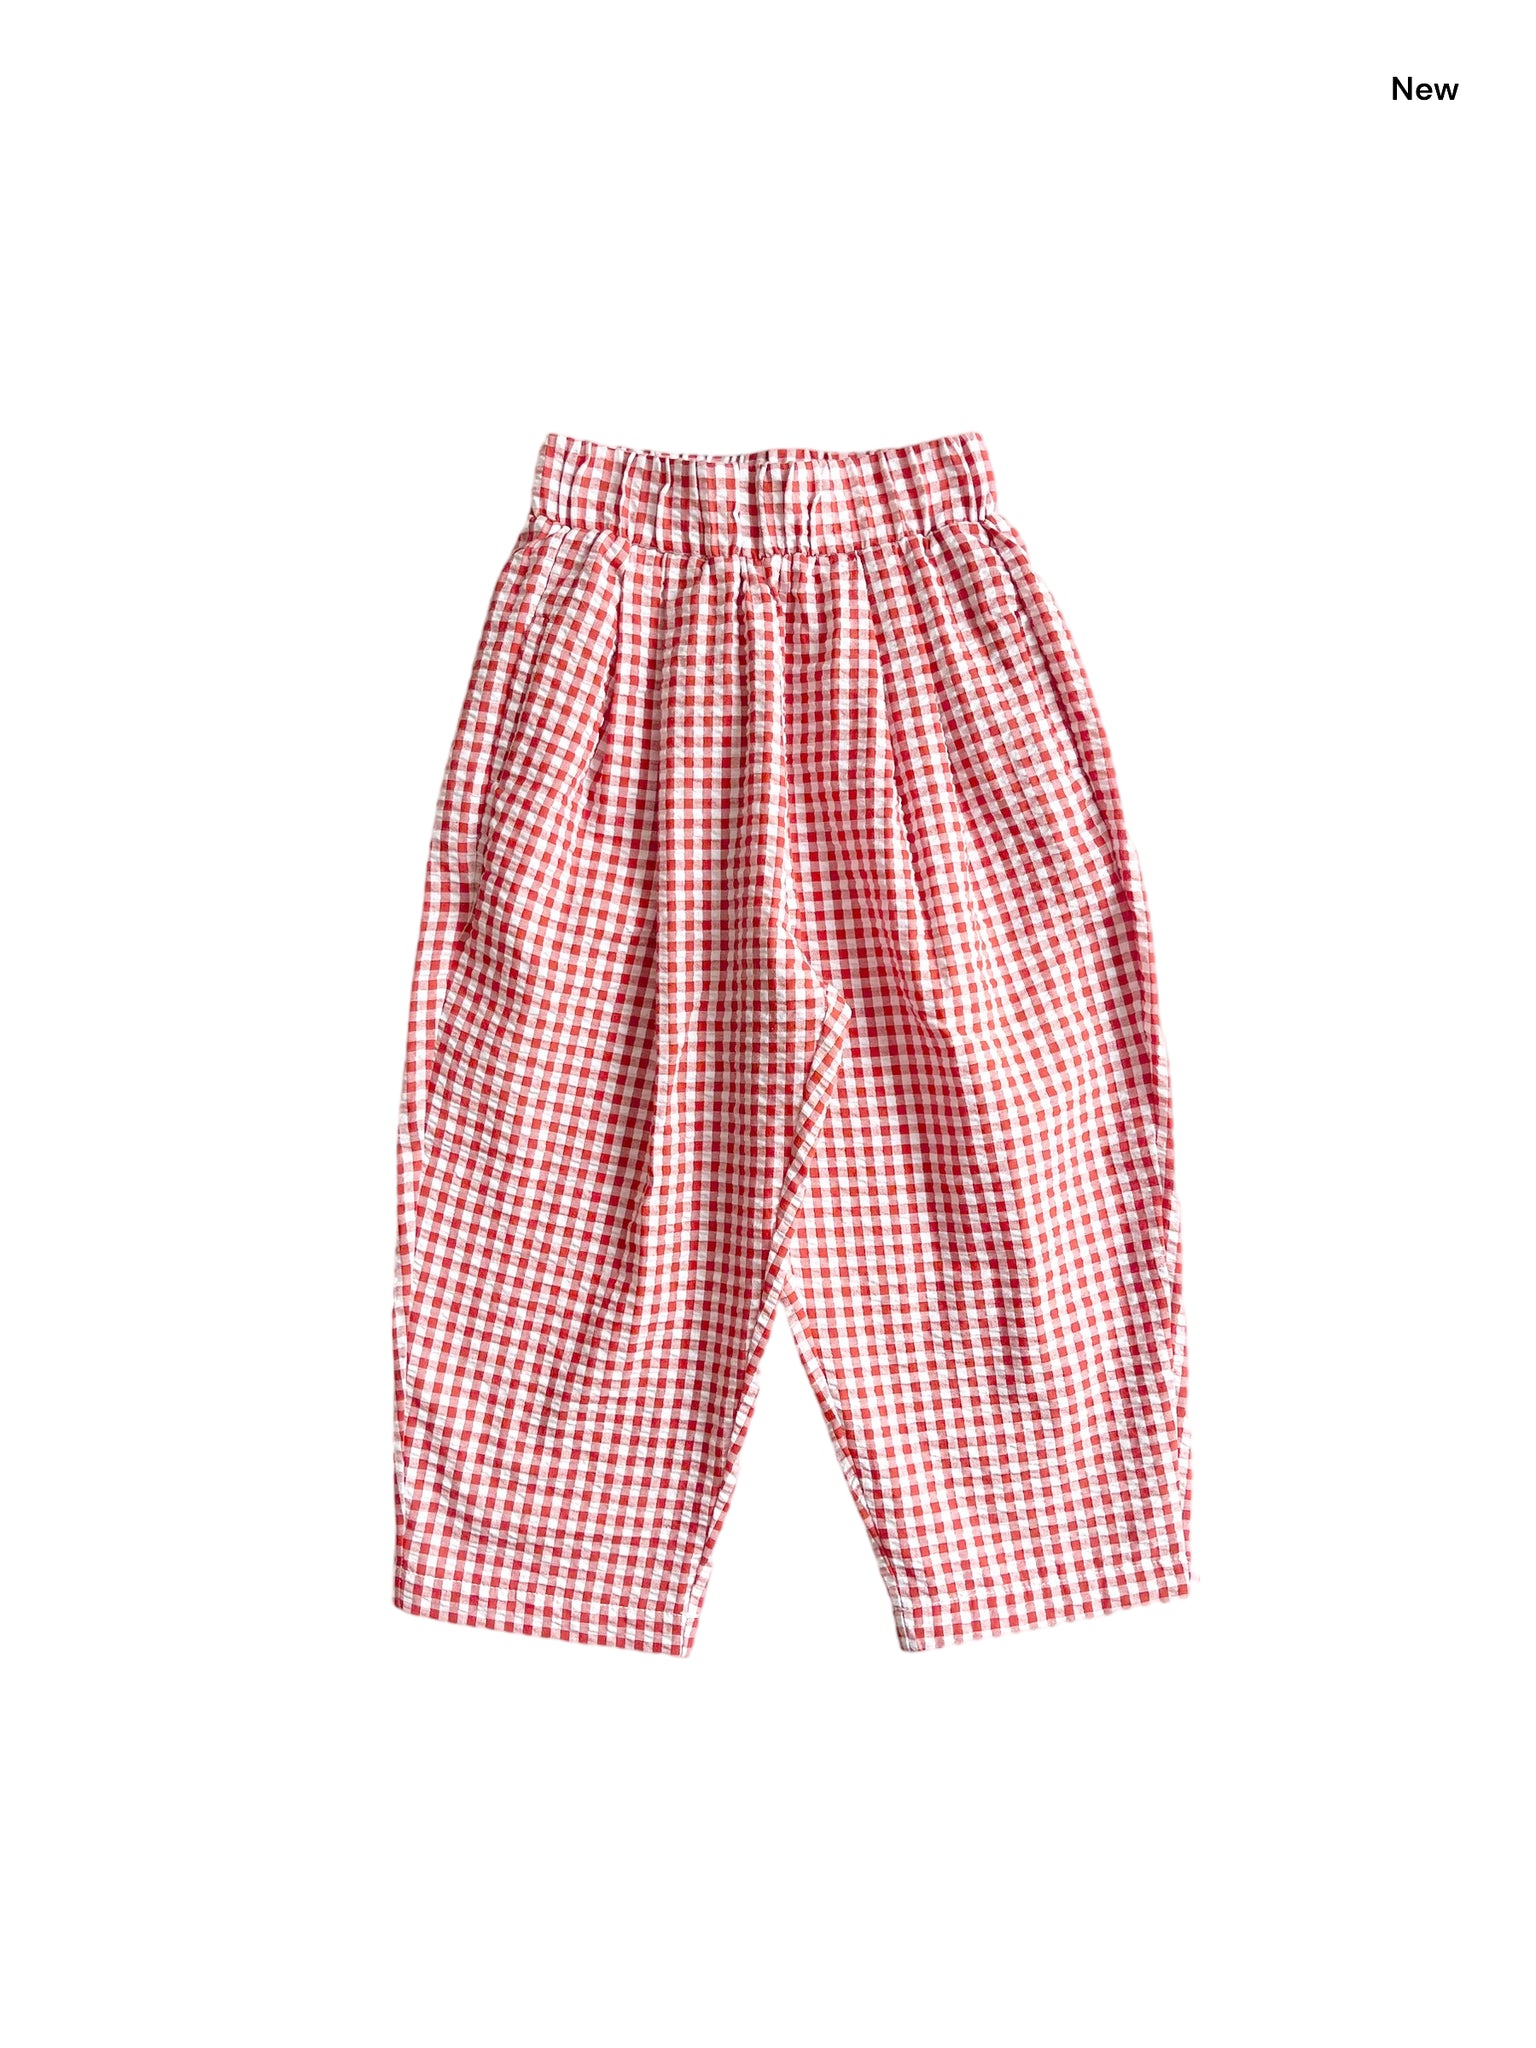 Pantalone vichy rosso e bianco per neonata e bambina